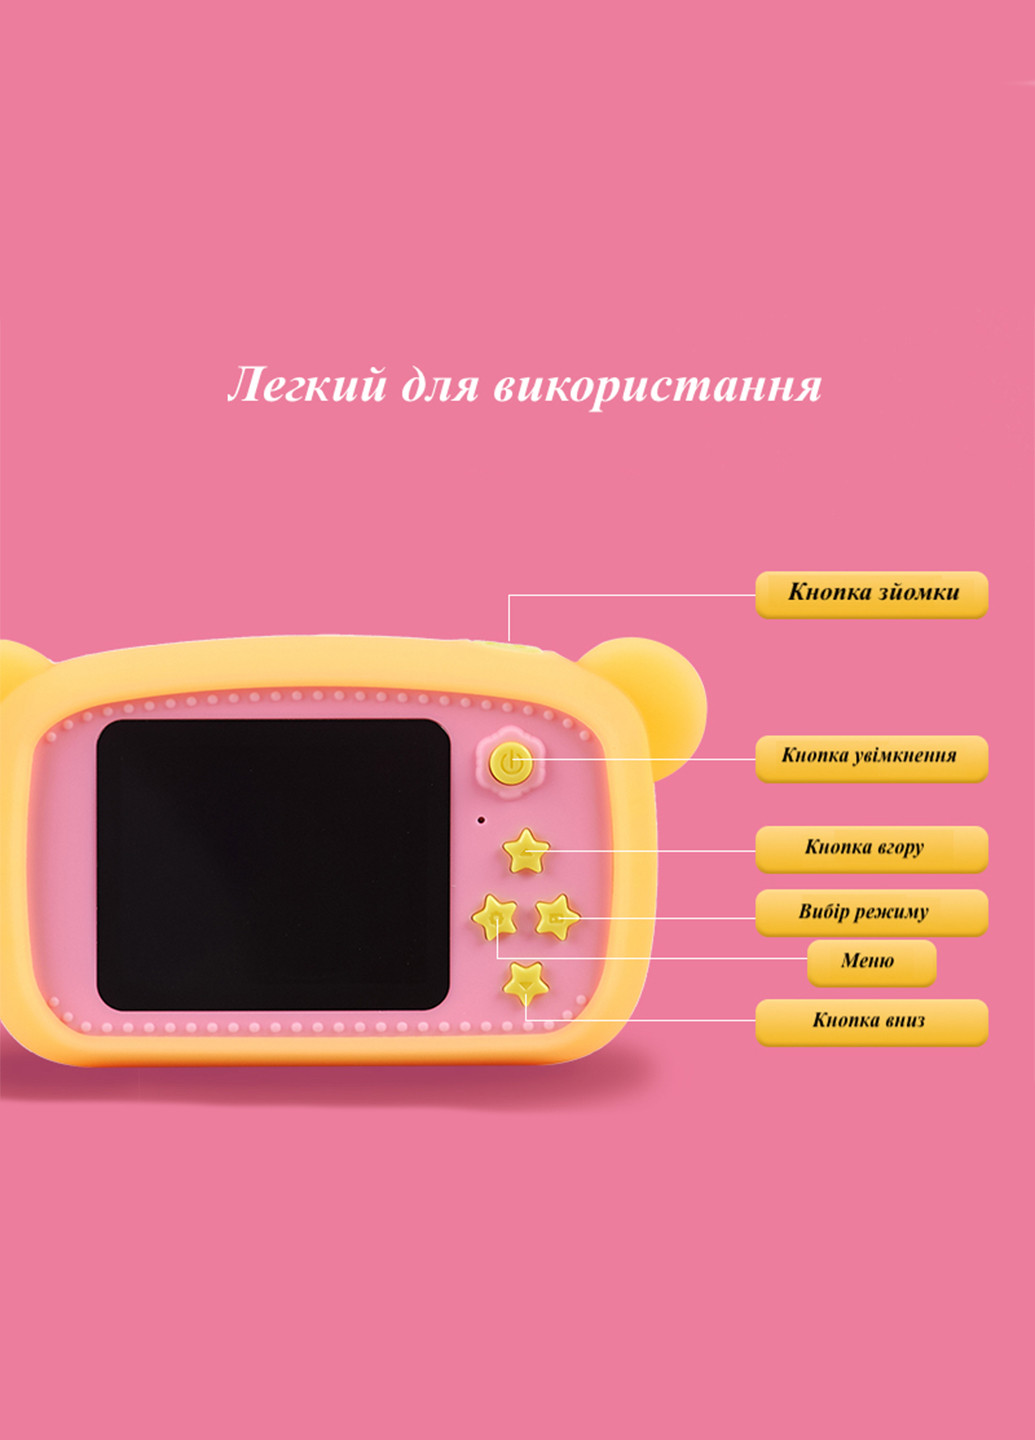 Цифровий дитячий фотоапарат KVR-100 Bee Dual Lens рожевий () XoKo kvr-100-pn (171738974)